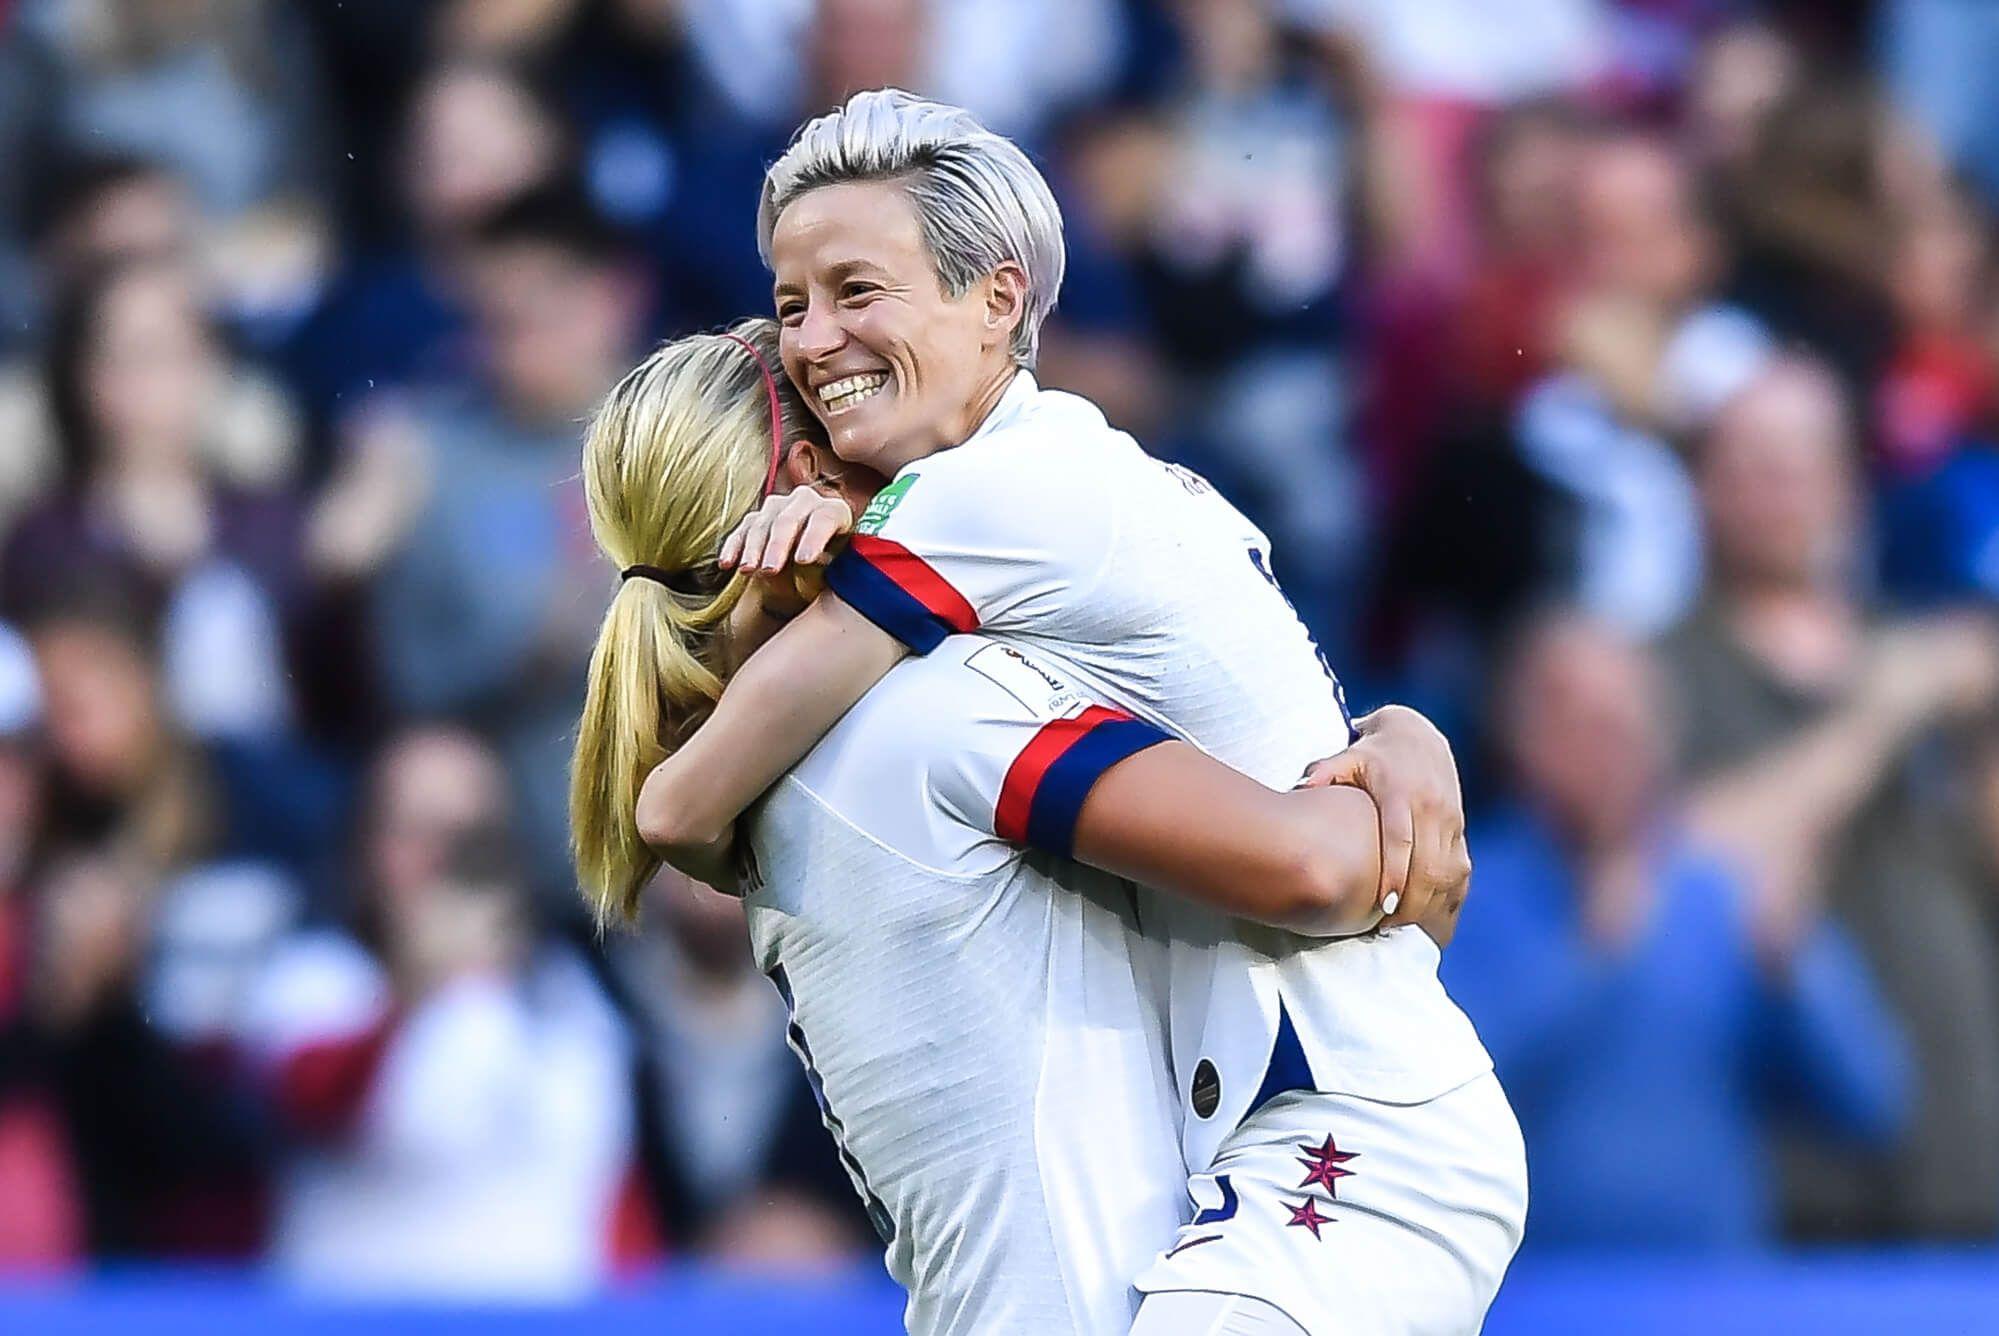 Lindsey Horan, a la izquierda, del equipo nacional femenino de fútbol de Estados Unidos celebra con Megan Rapinoe después de marcar contra el equipo nacional femenino de fútbol de Suecia. Foto: Depositphotos